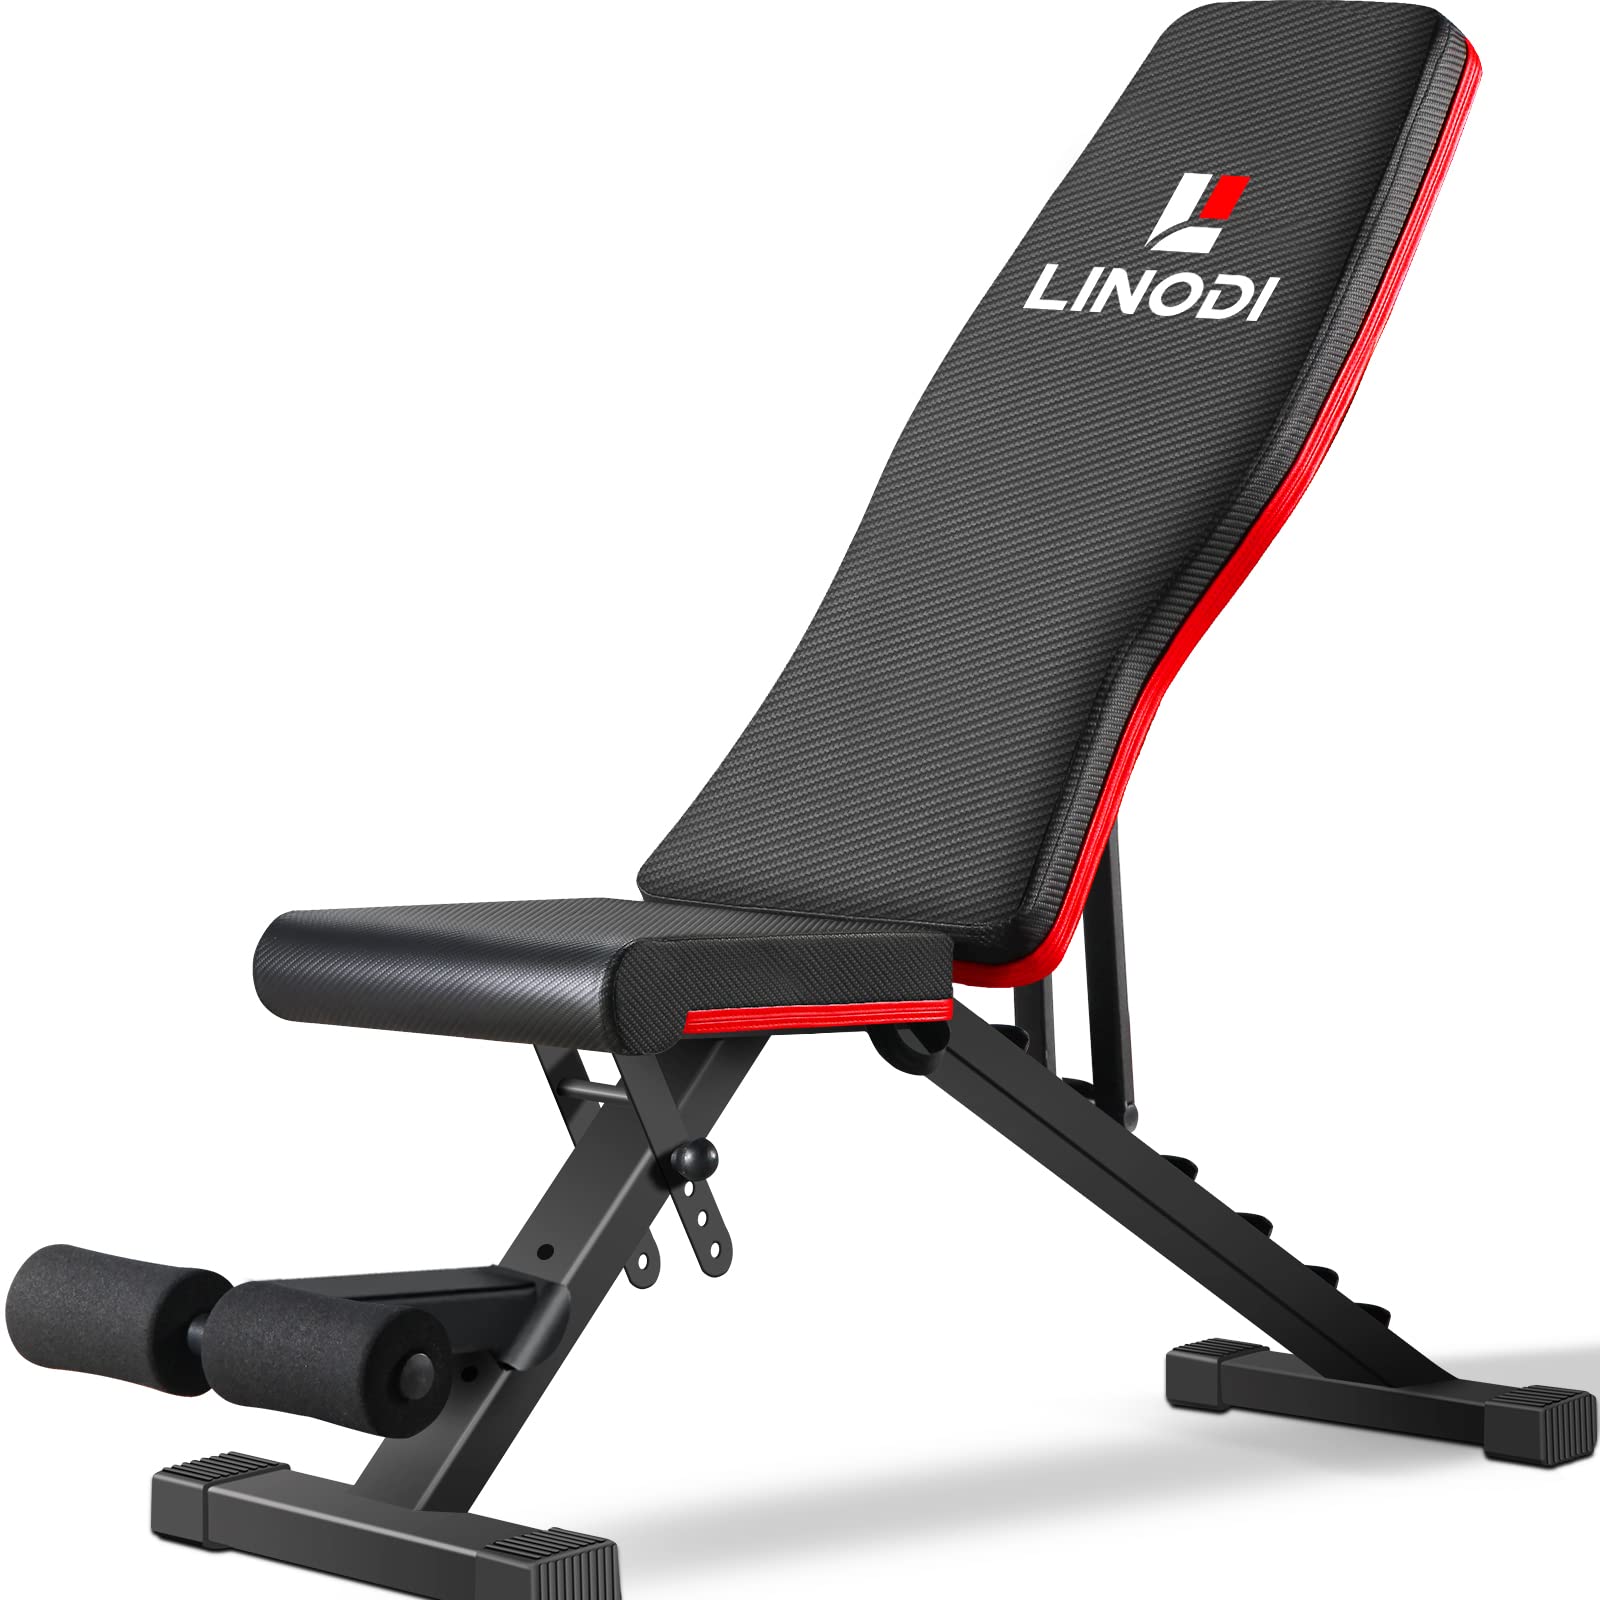 LINODI ウェイトベンチ、全身トレーニング用の調整可能な筋力トレーニングベンチ、多目的折りたたみ式インクラ...